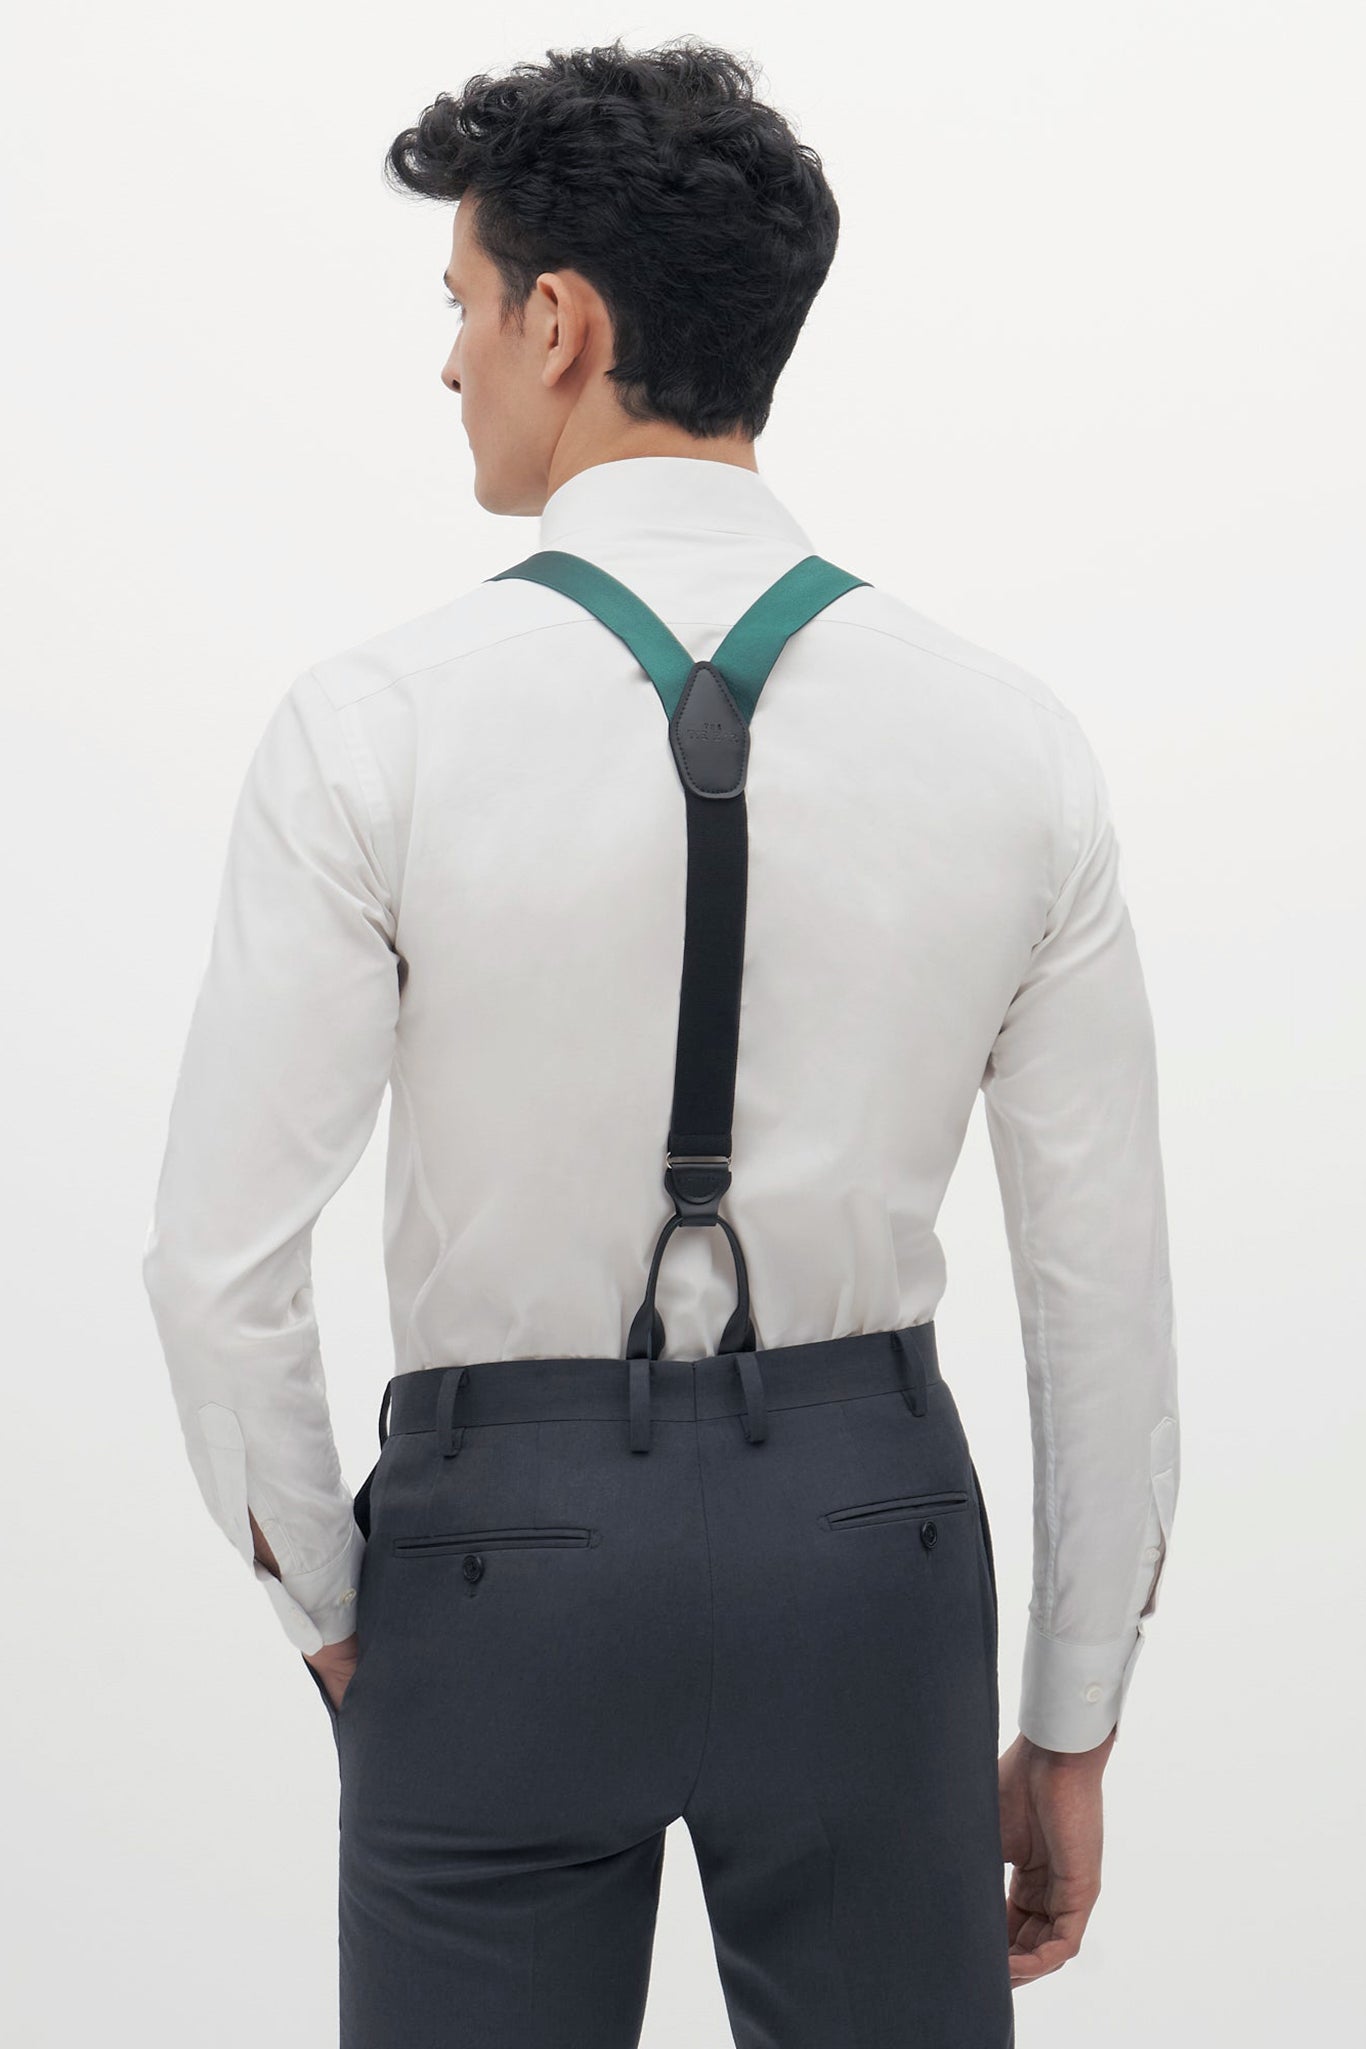 Hunter Green Grosgrain Suspenders by SuitShop, back view